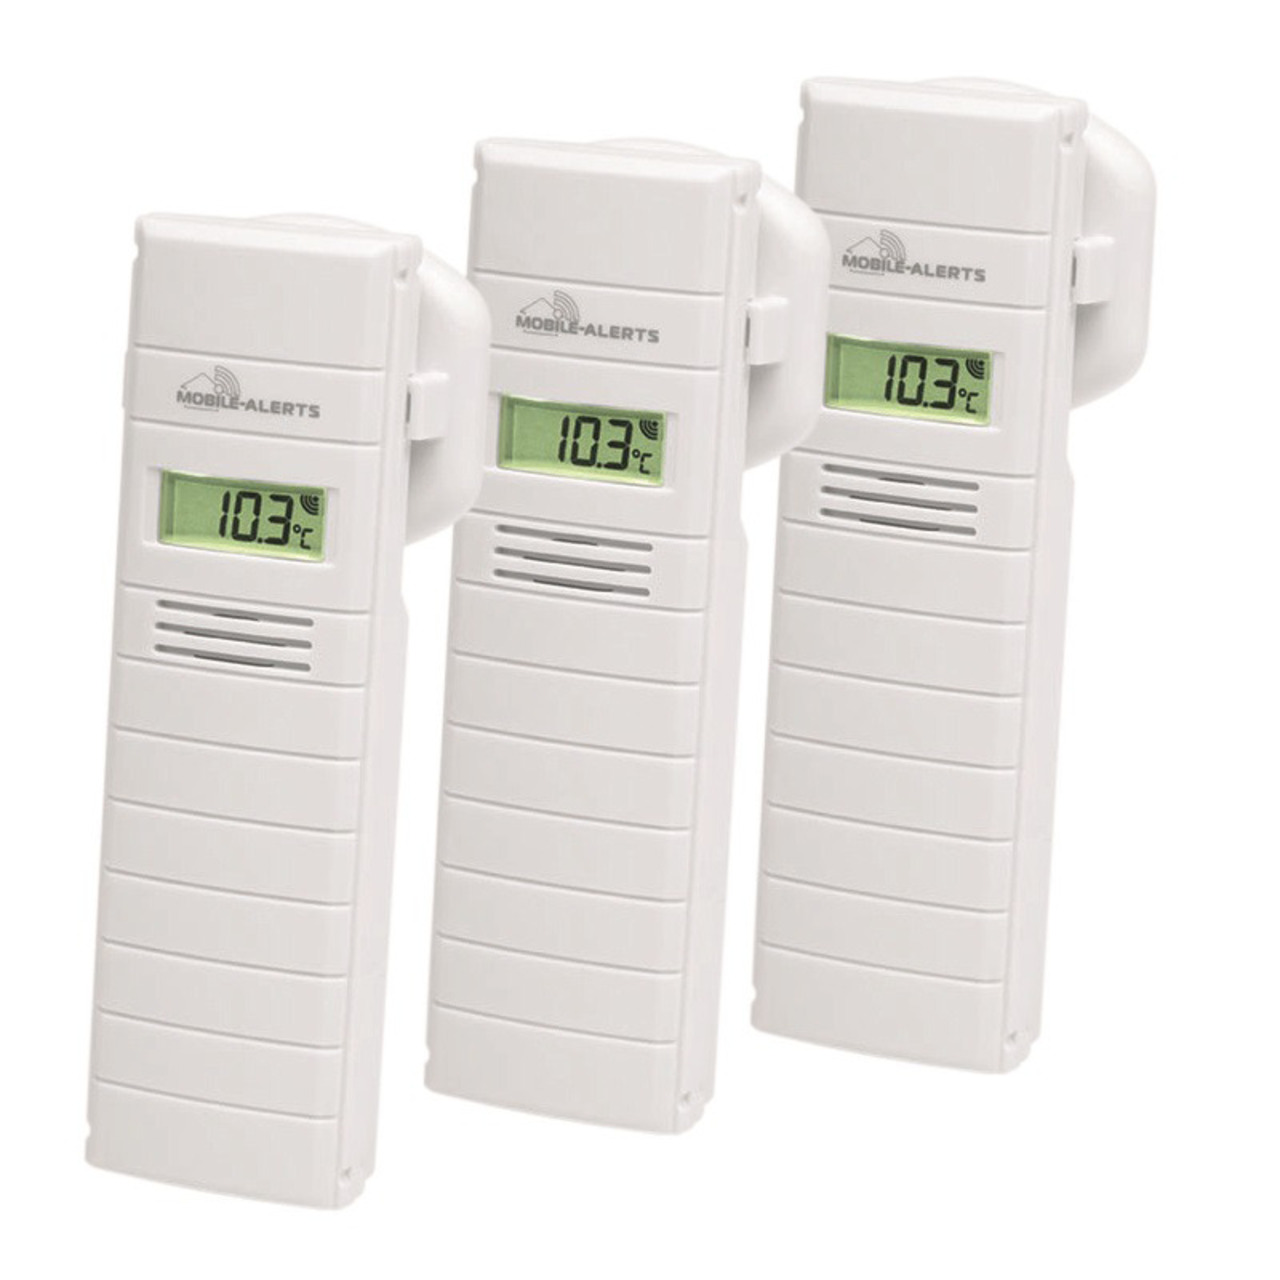 Mobile Alerts 3er-Set Temperatur-Luftfeuchtigkeitssensor MA10200 mit LC-Display